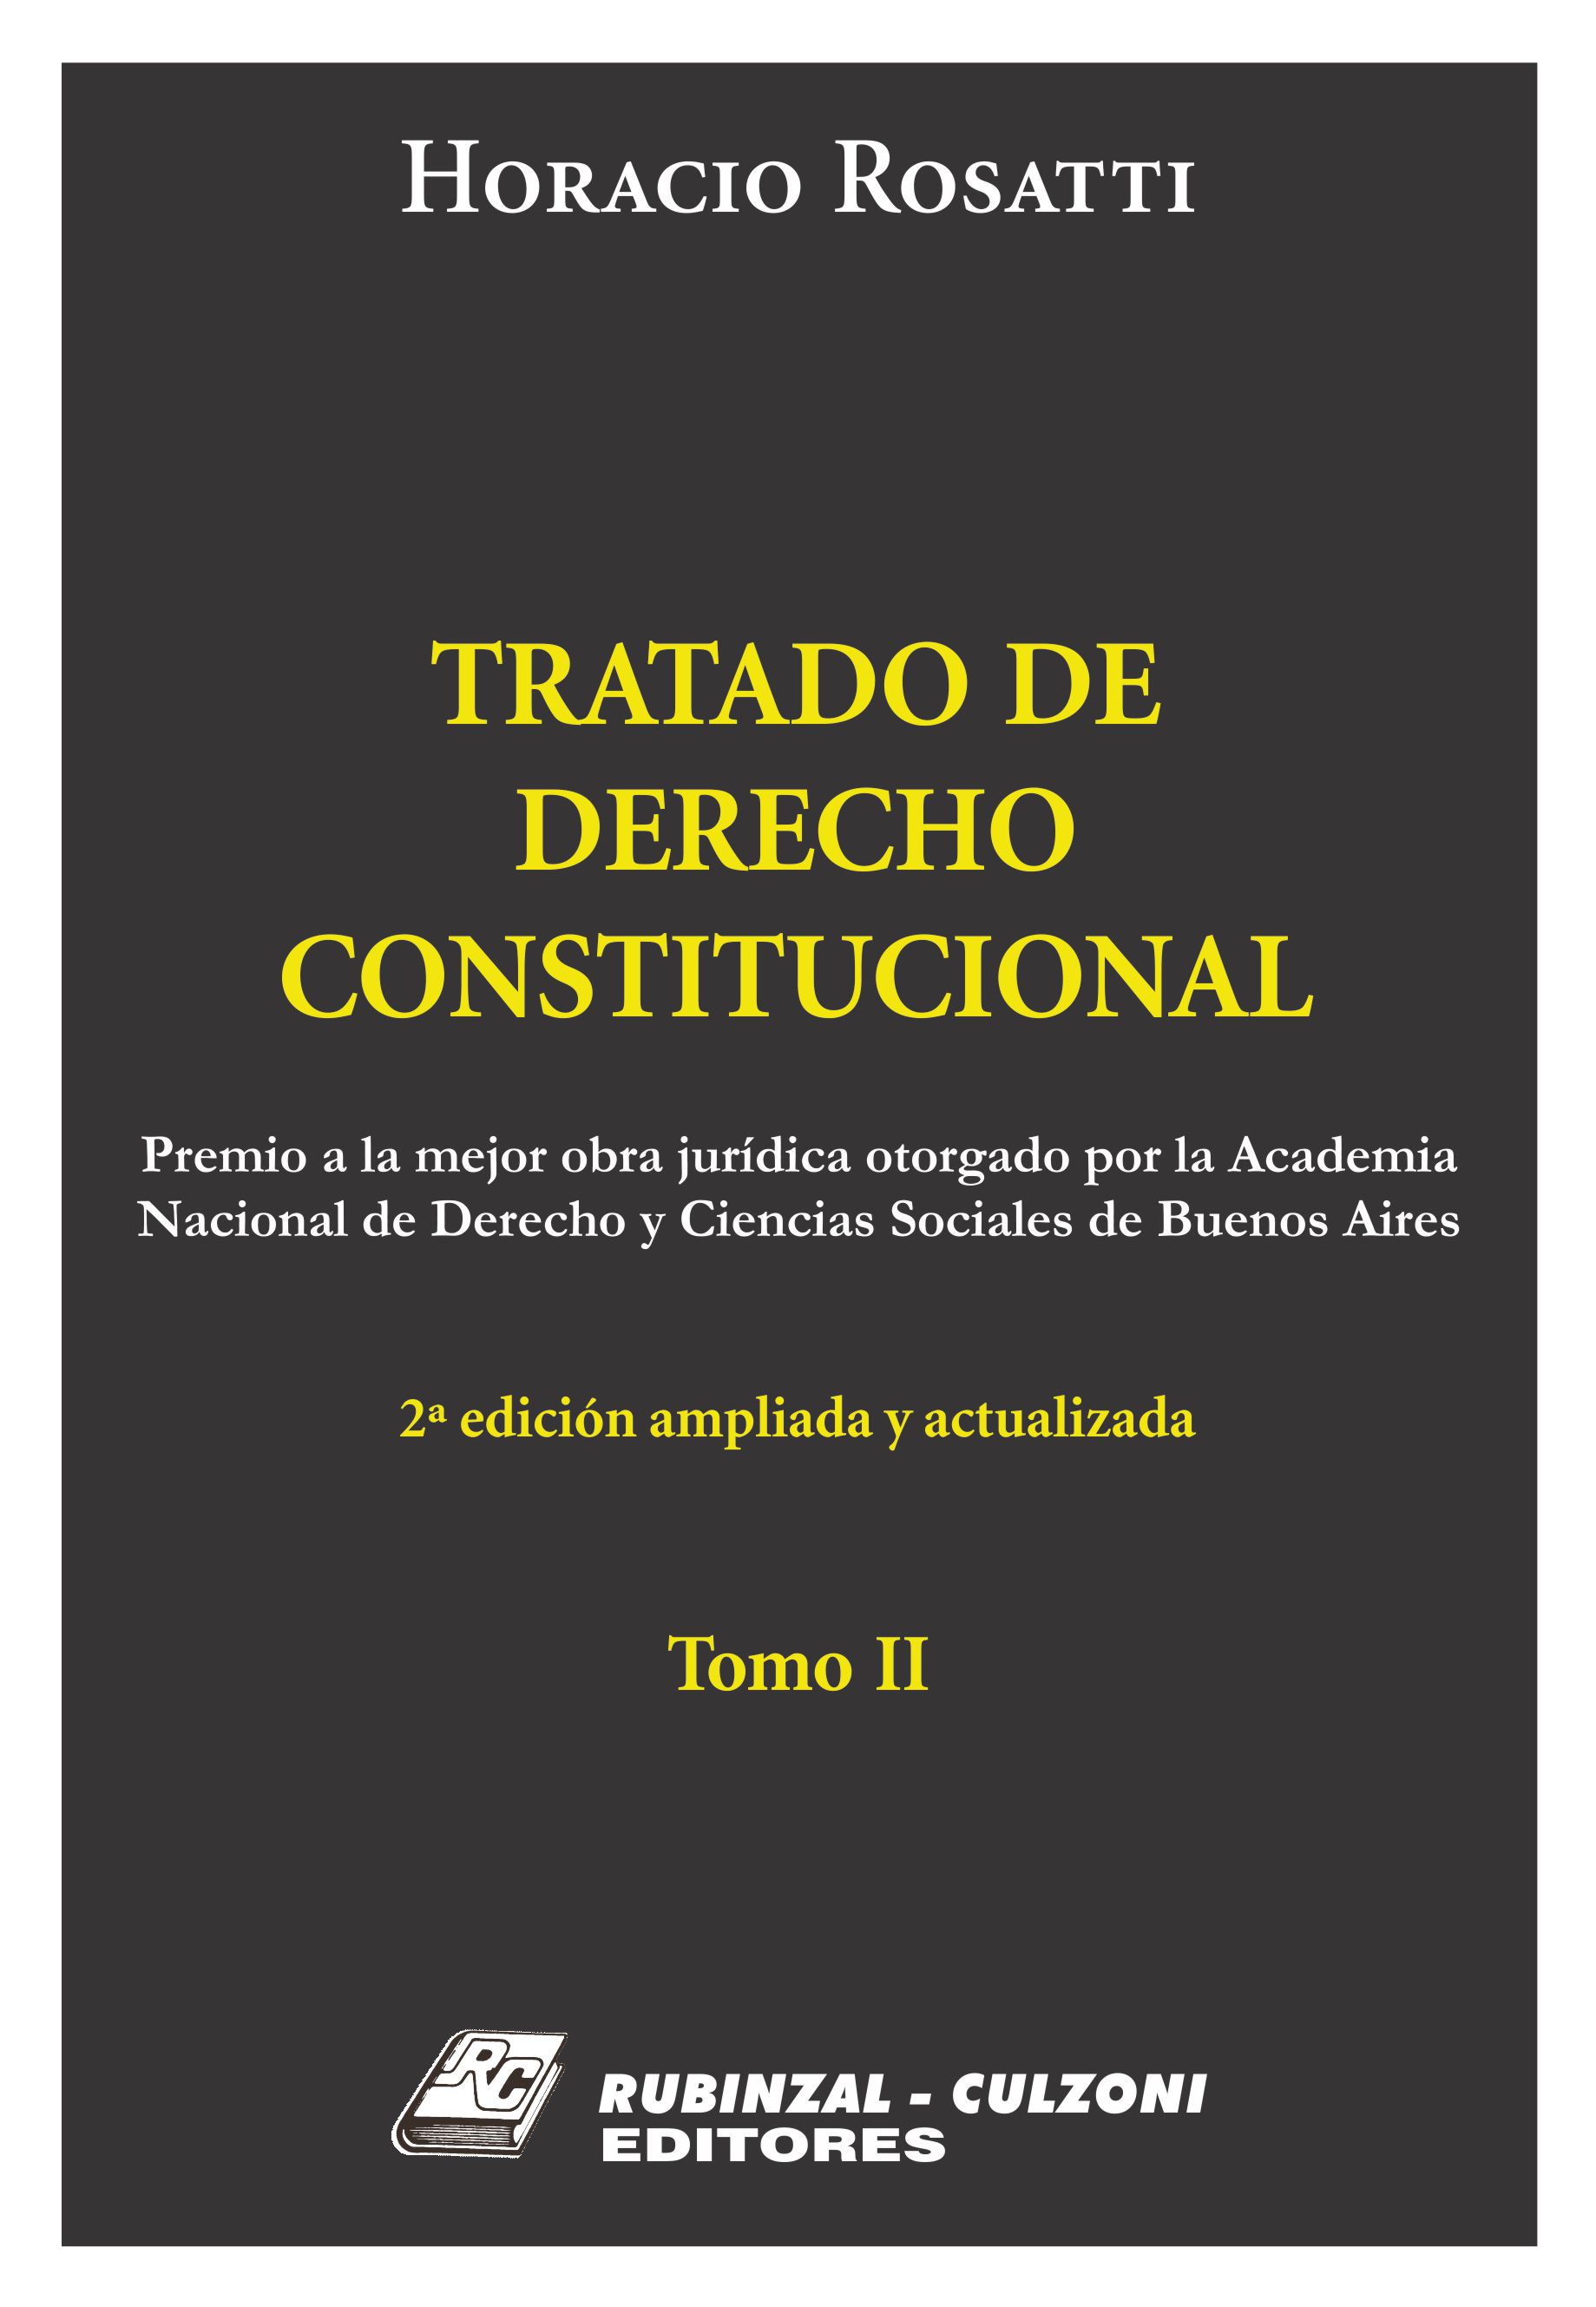 Tratado de Derecho Constitucional, 2ª Edición ampliada y actualizada - Tomo II